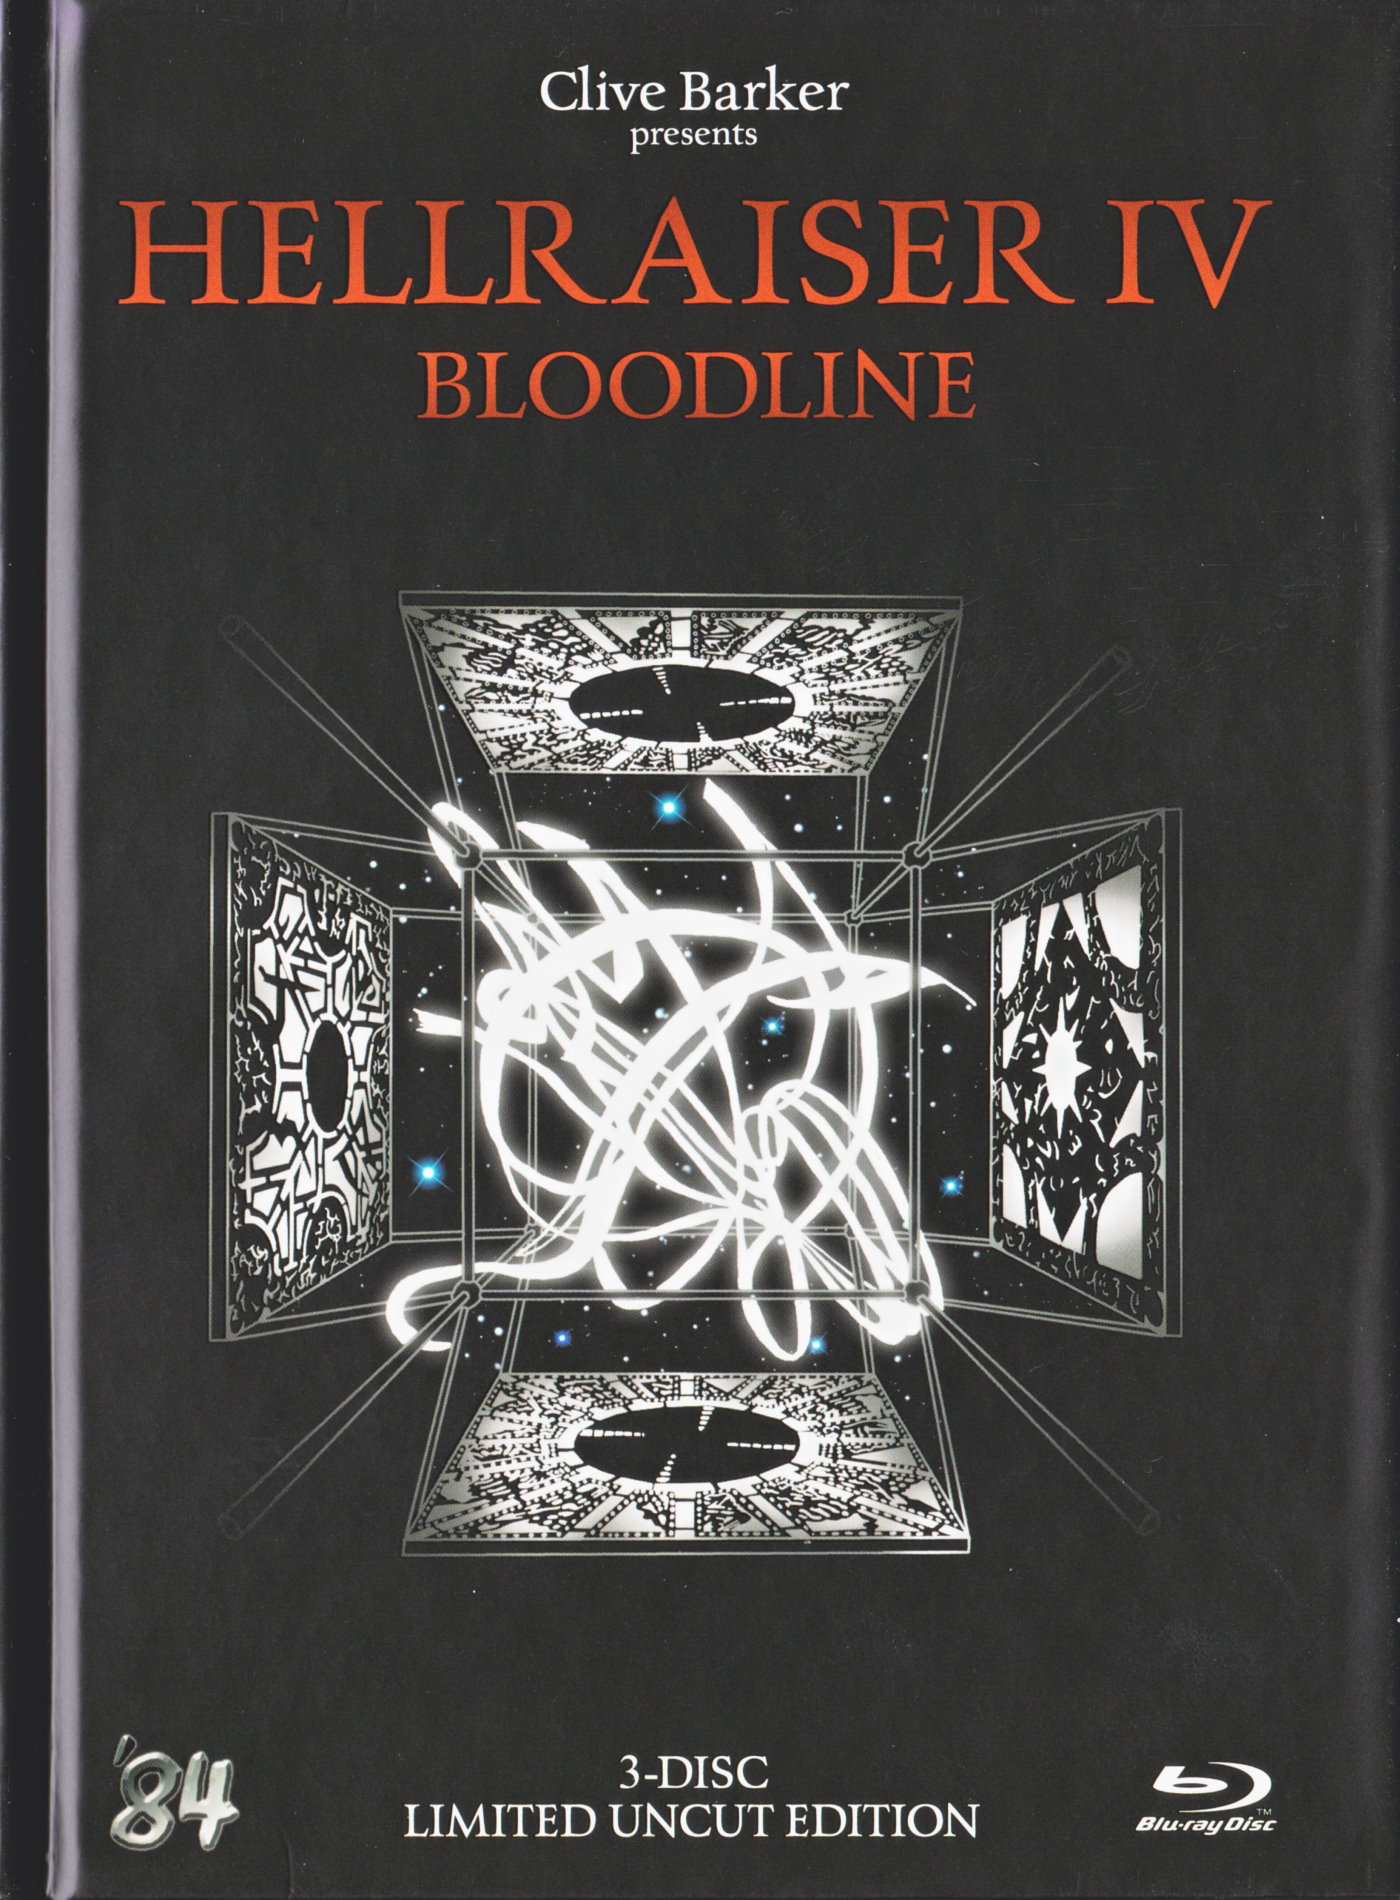 Cover - Hellraiser IV - Bloodline.jpg